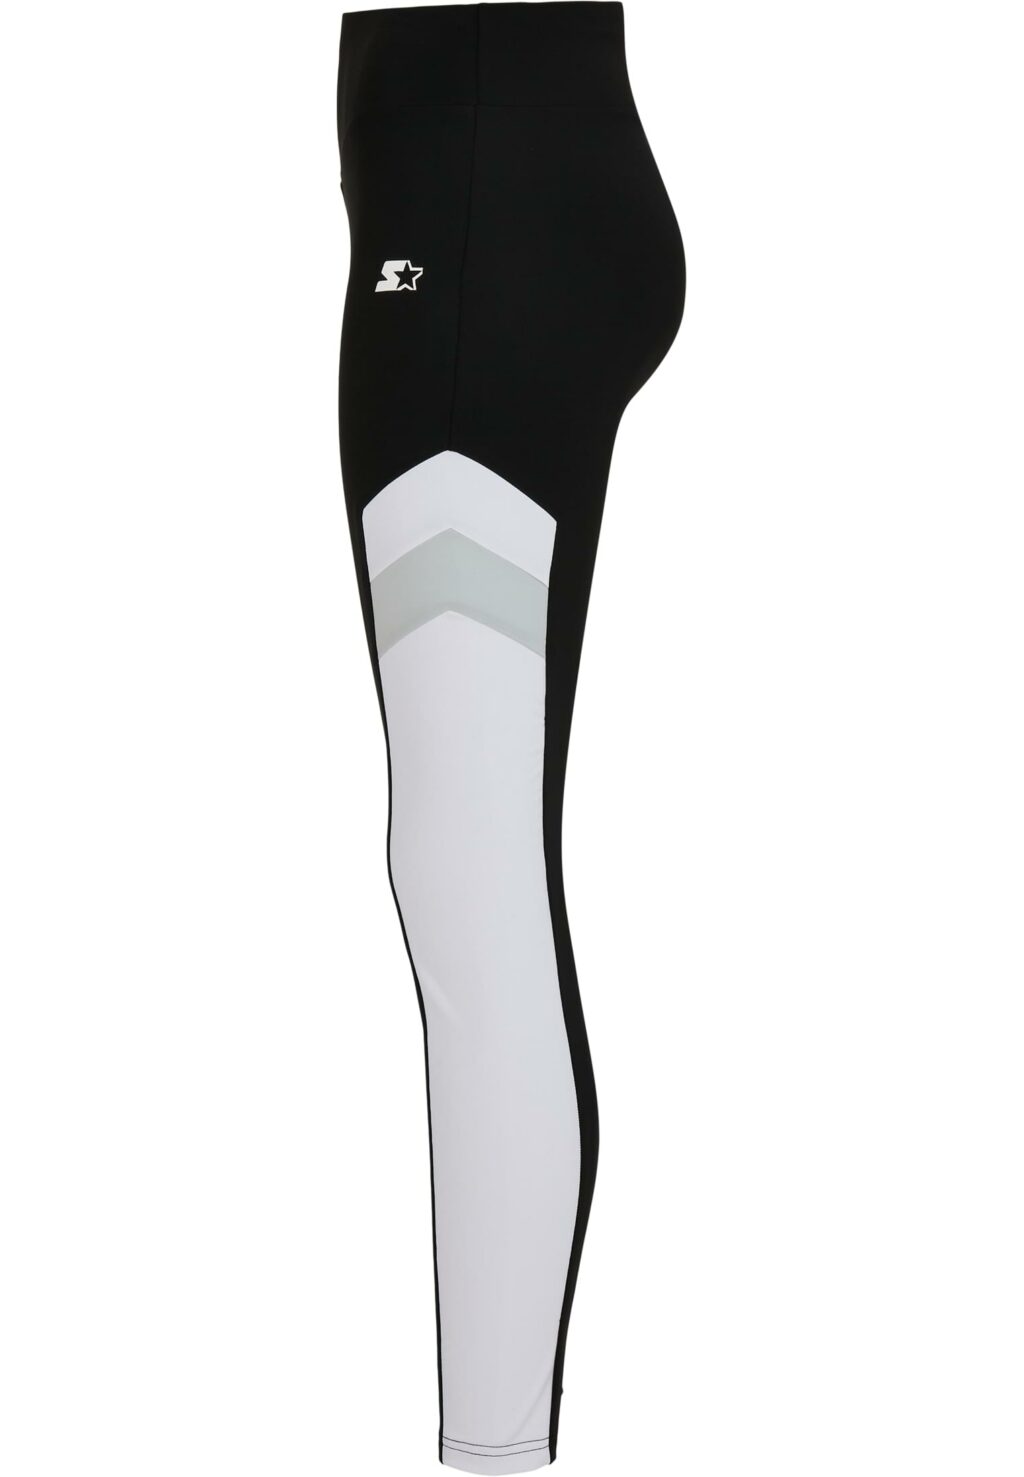 Ladies Starter Highwaist Sports Leggings black/white ST162